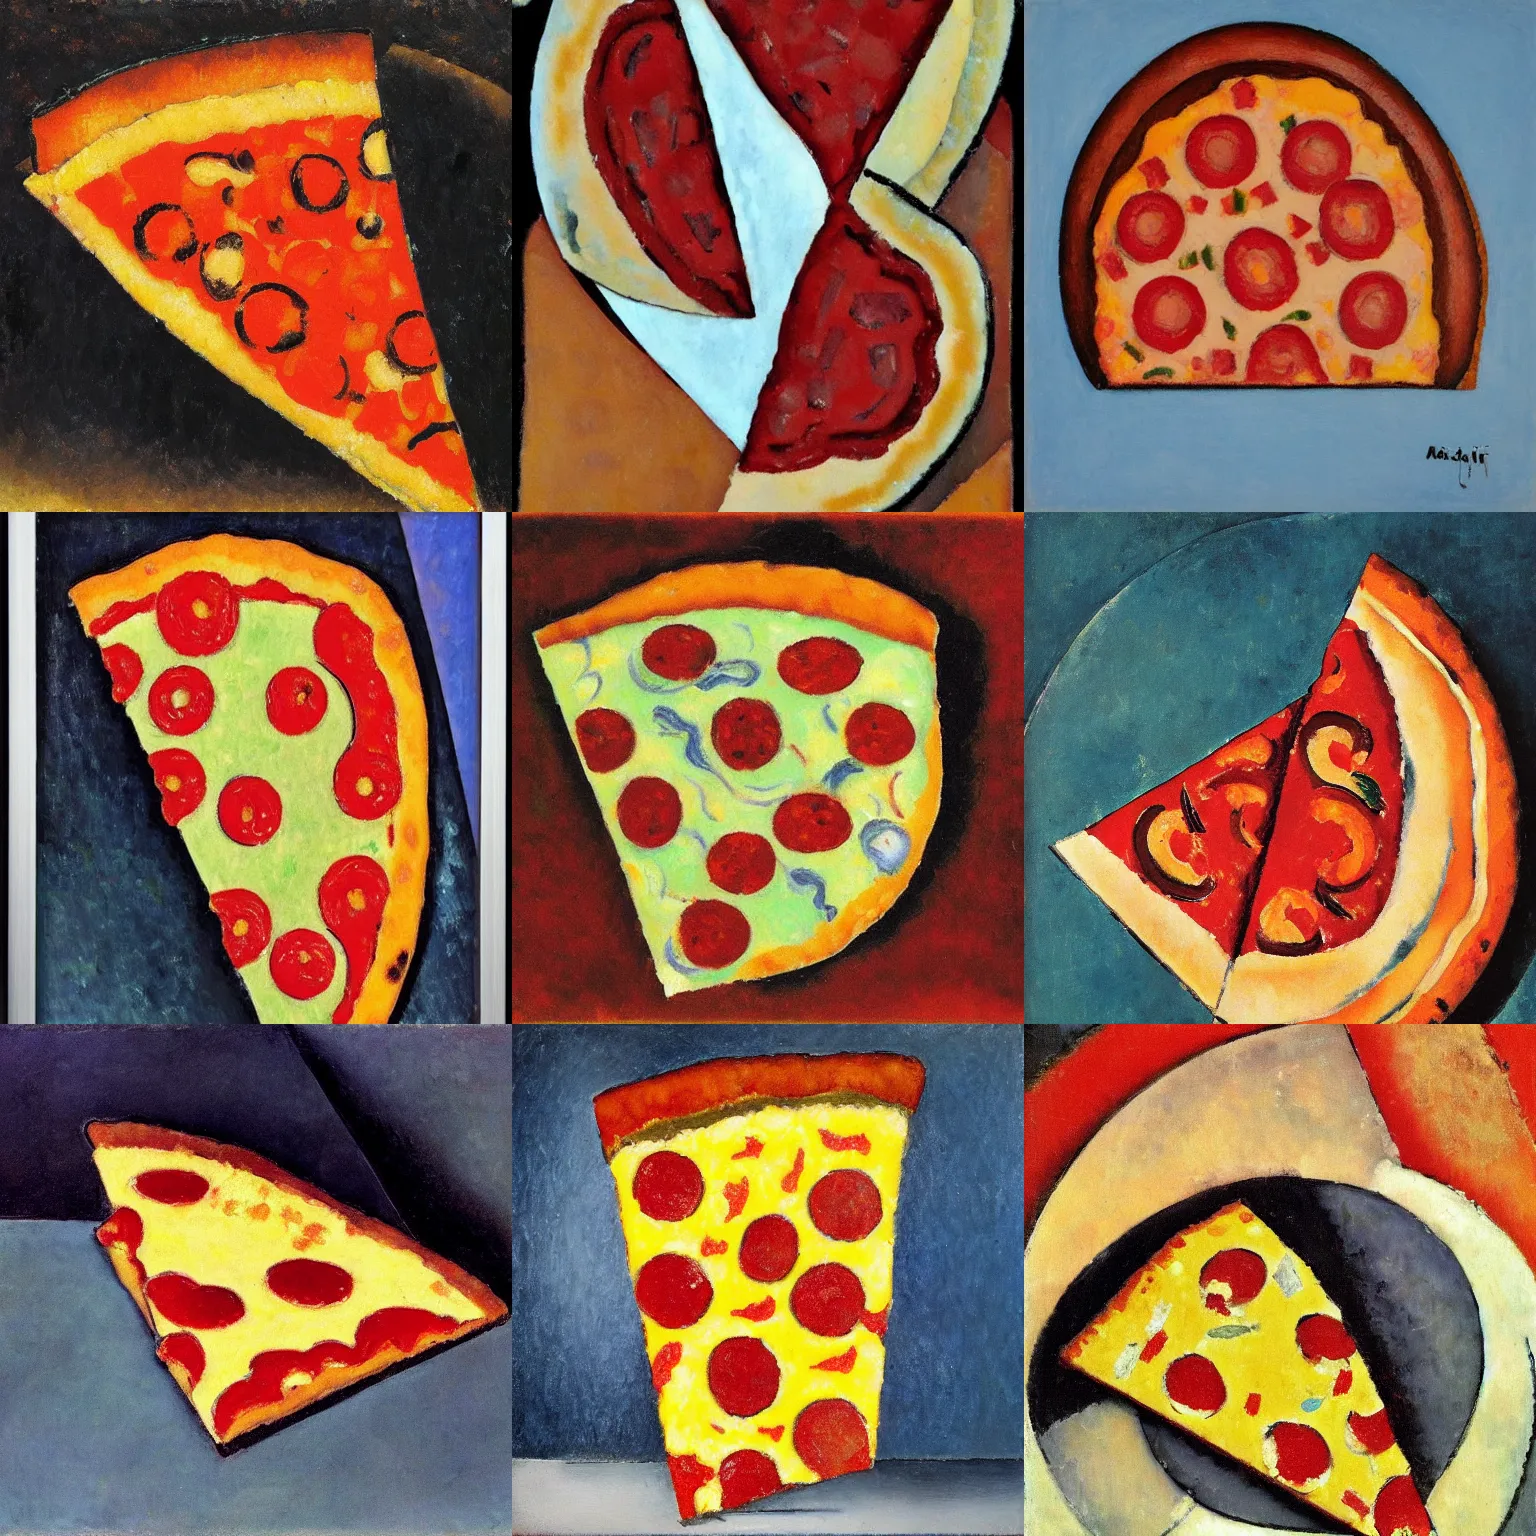 Prompt: Slice of Pizza - Modigliani